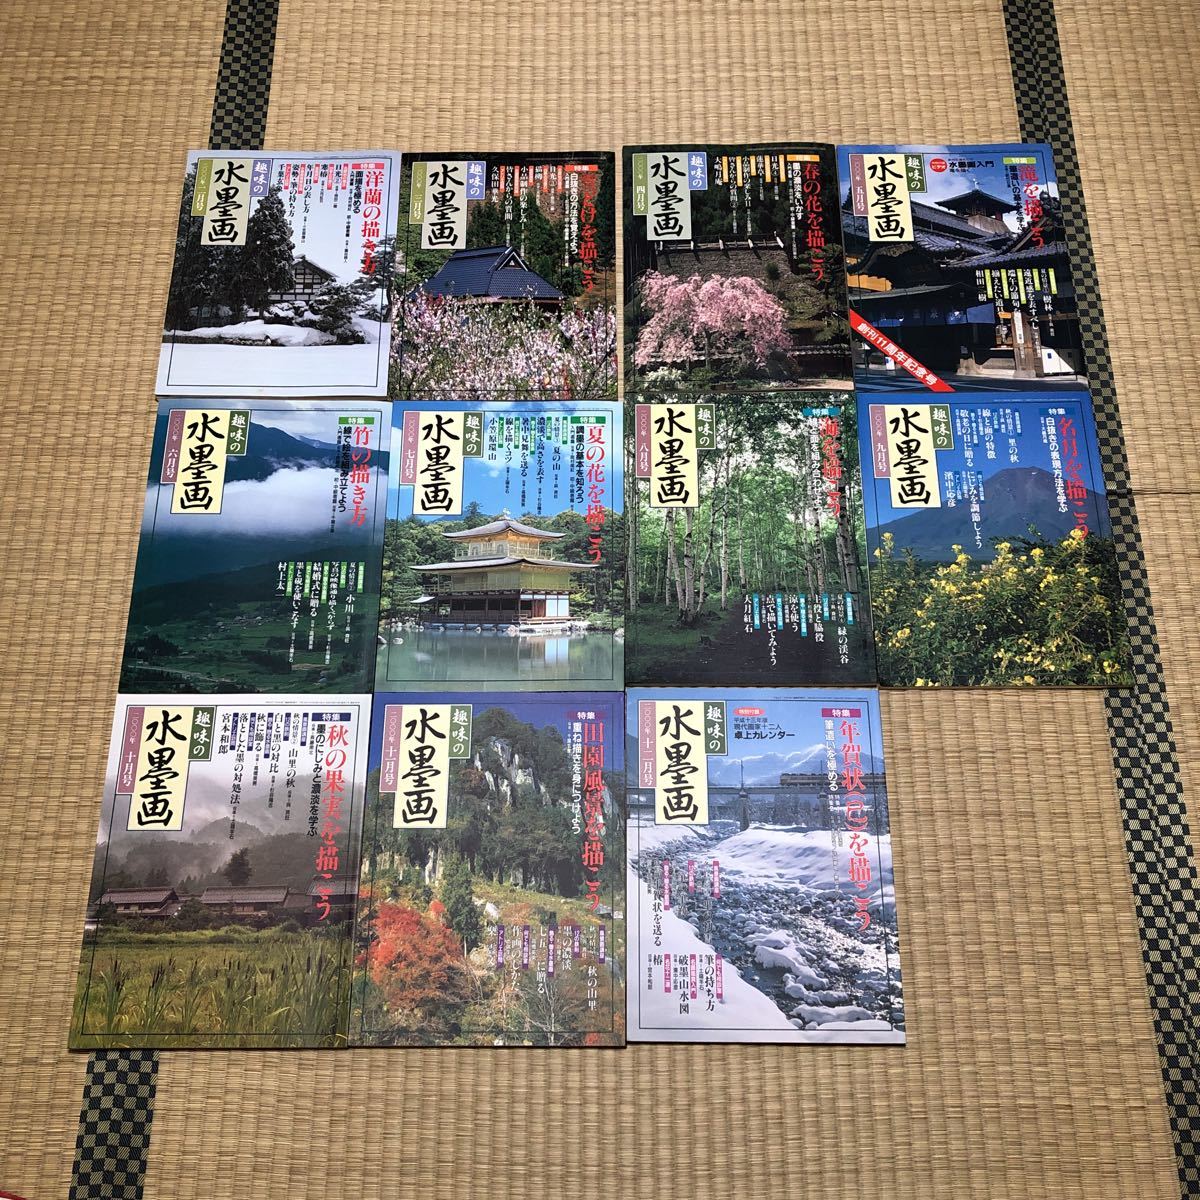 爱好水墨画 2000 年 2 月至 2000 年 12 月 11 卷套装 日本艺术教育中心, 艺术品, 绘画, 水墨画